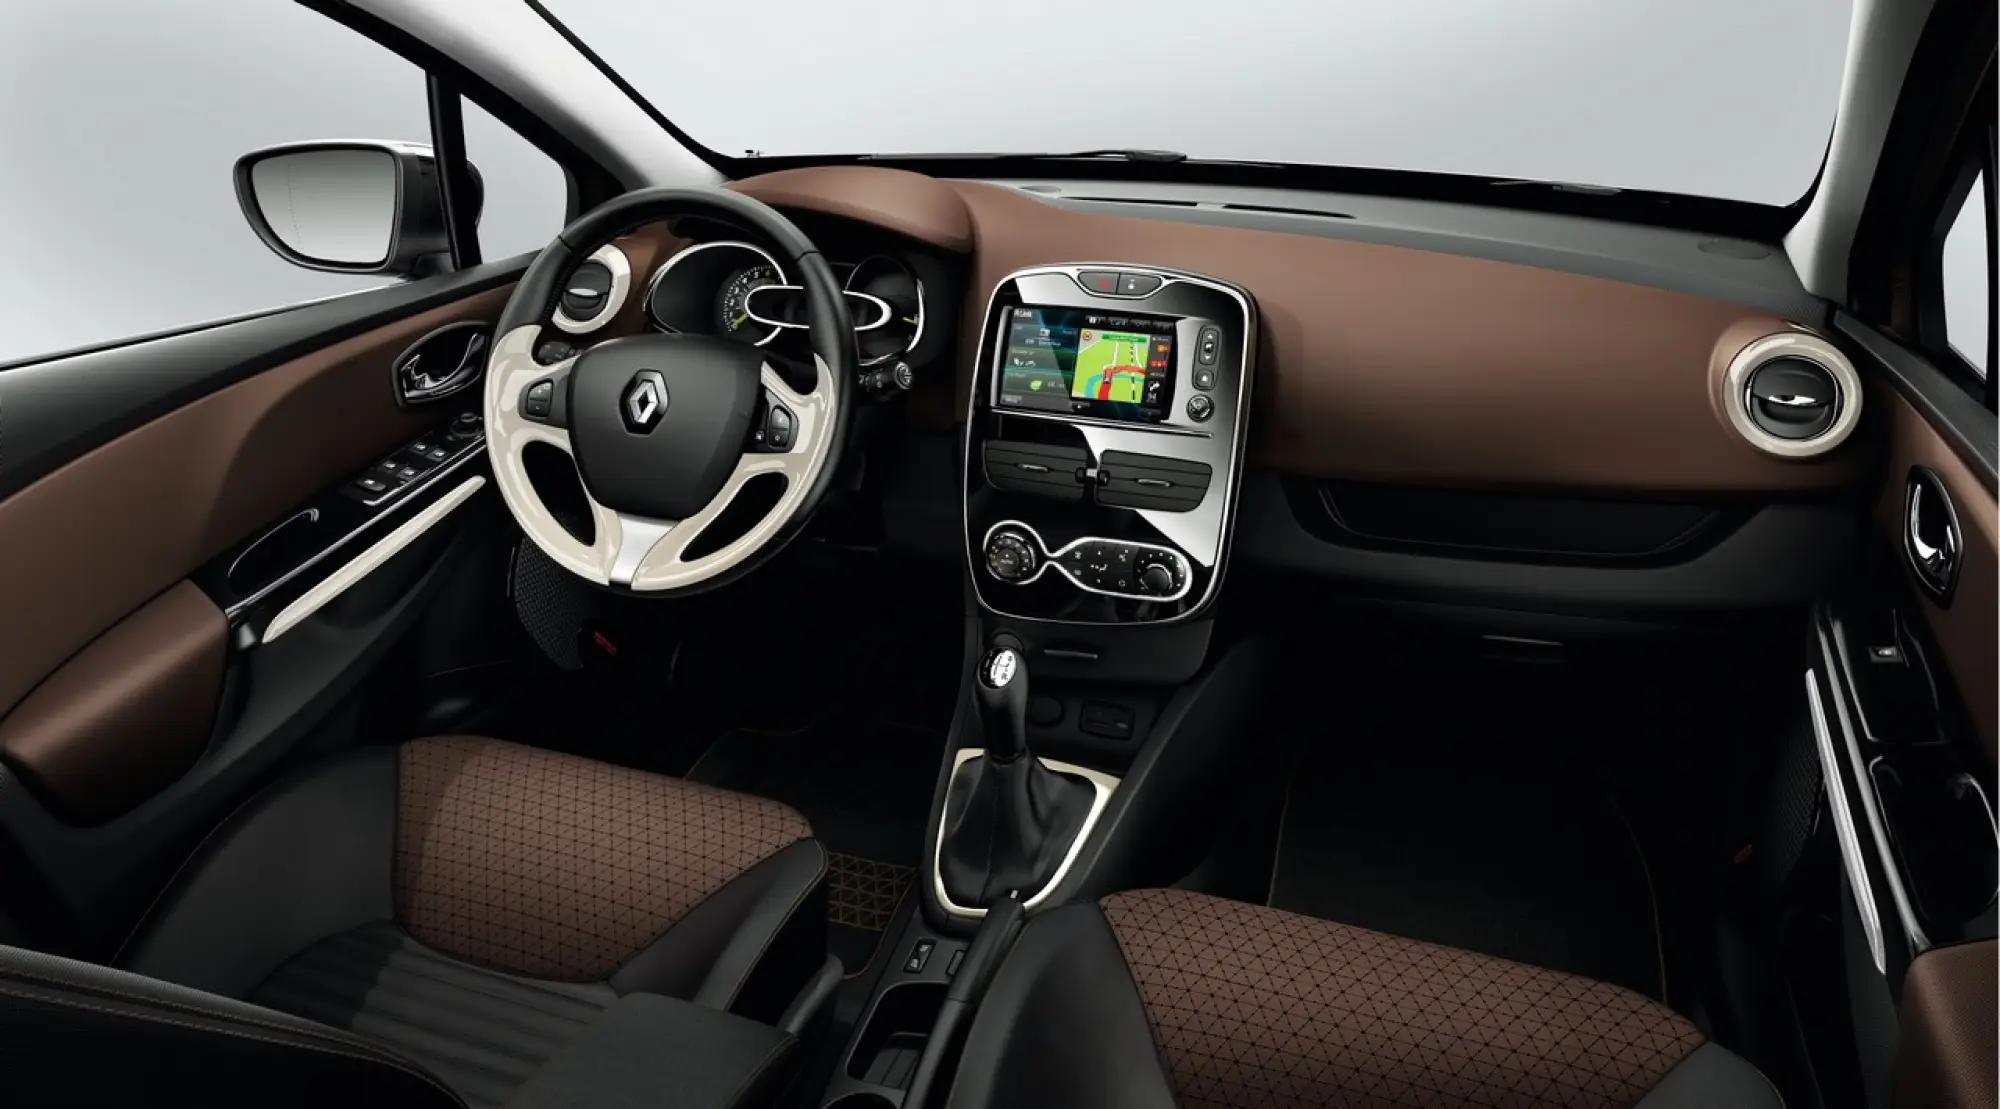 New Renault Clio - Salone di Parigi 2012 - 26